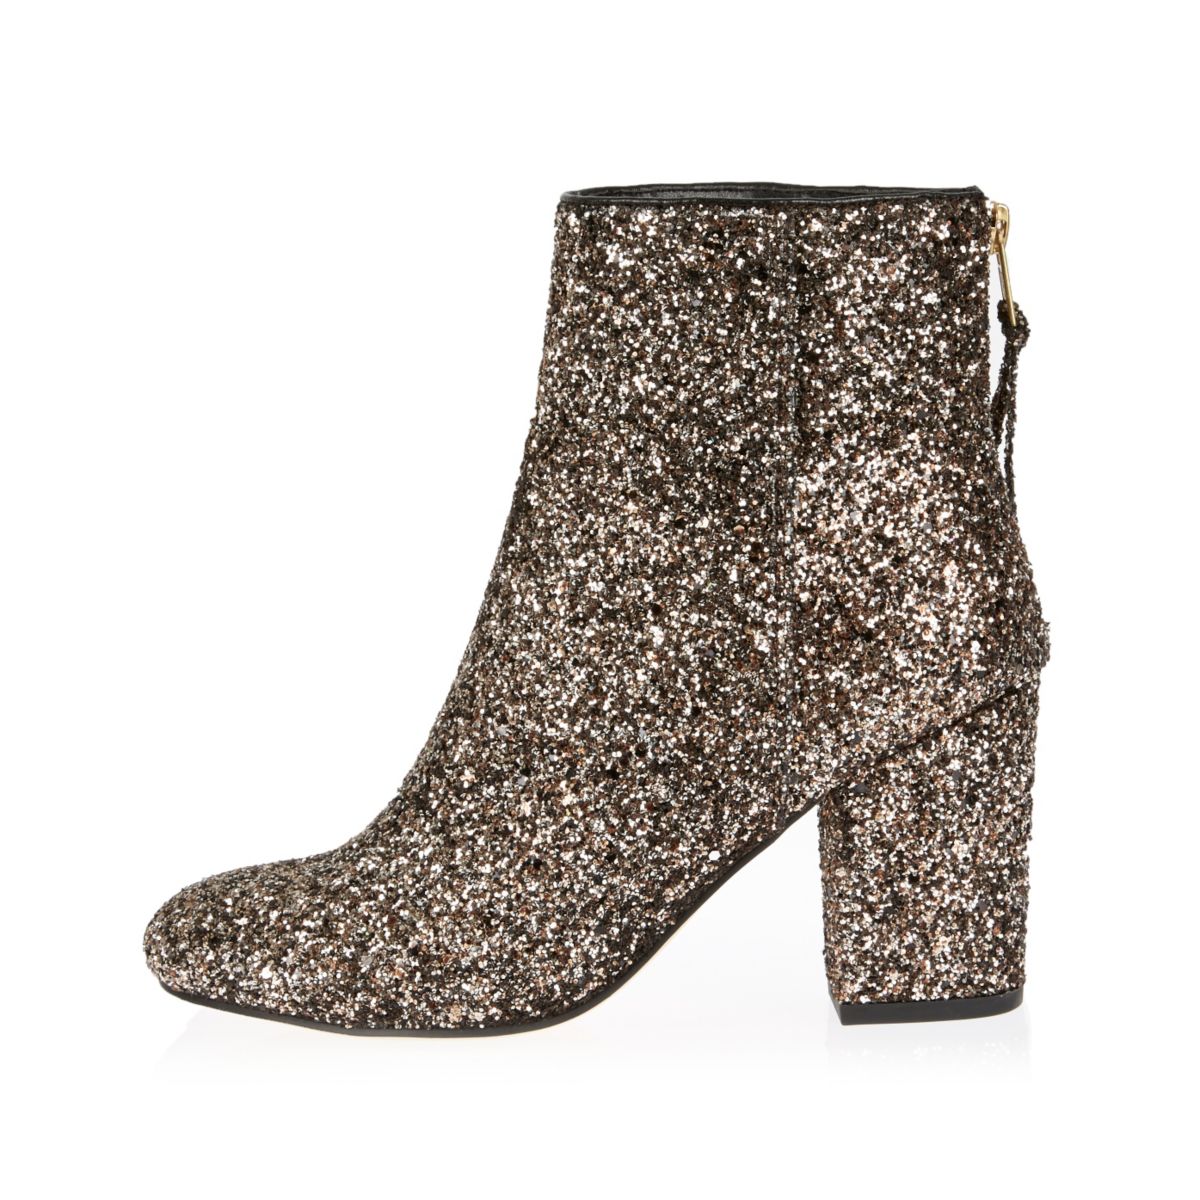 Gold glitter block heel ankle boots - Seasonal Offers - Sale - women